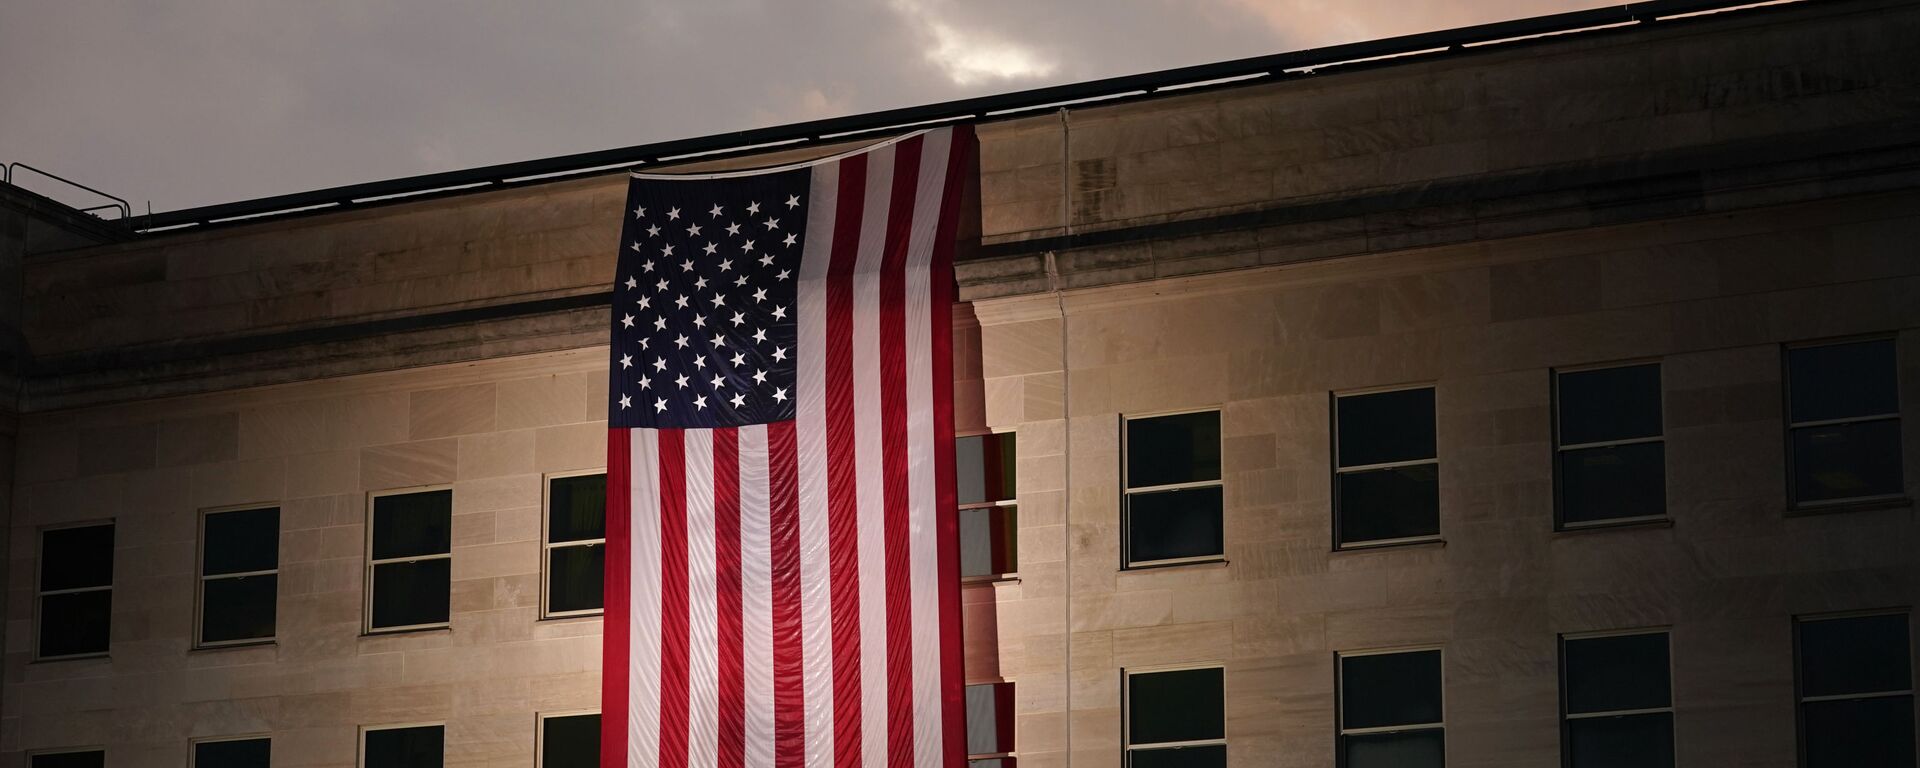 Здание Пентагона с флагом США в память о жертвах трагедии 11 сентября - Sputnik Србија, 1920, 30.09.2022